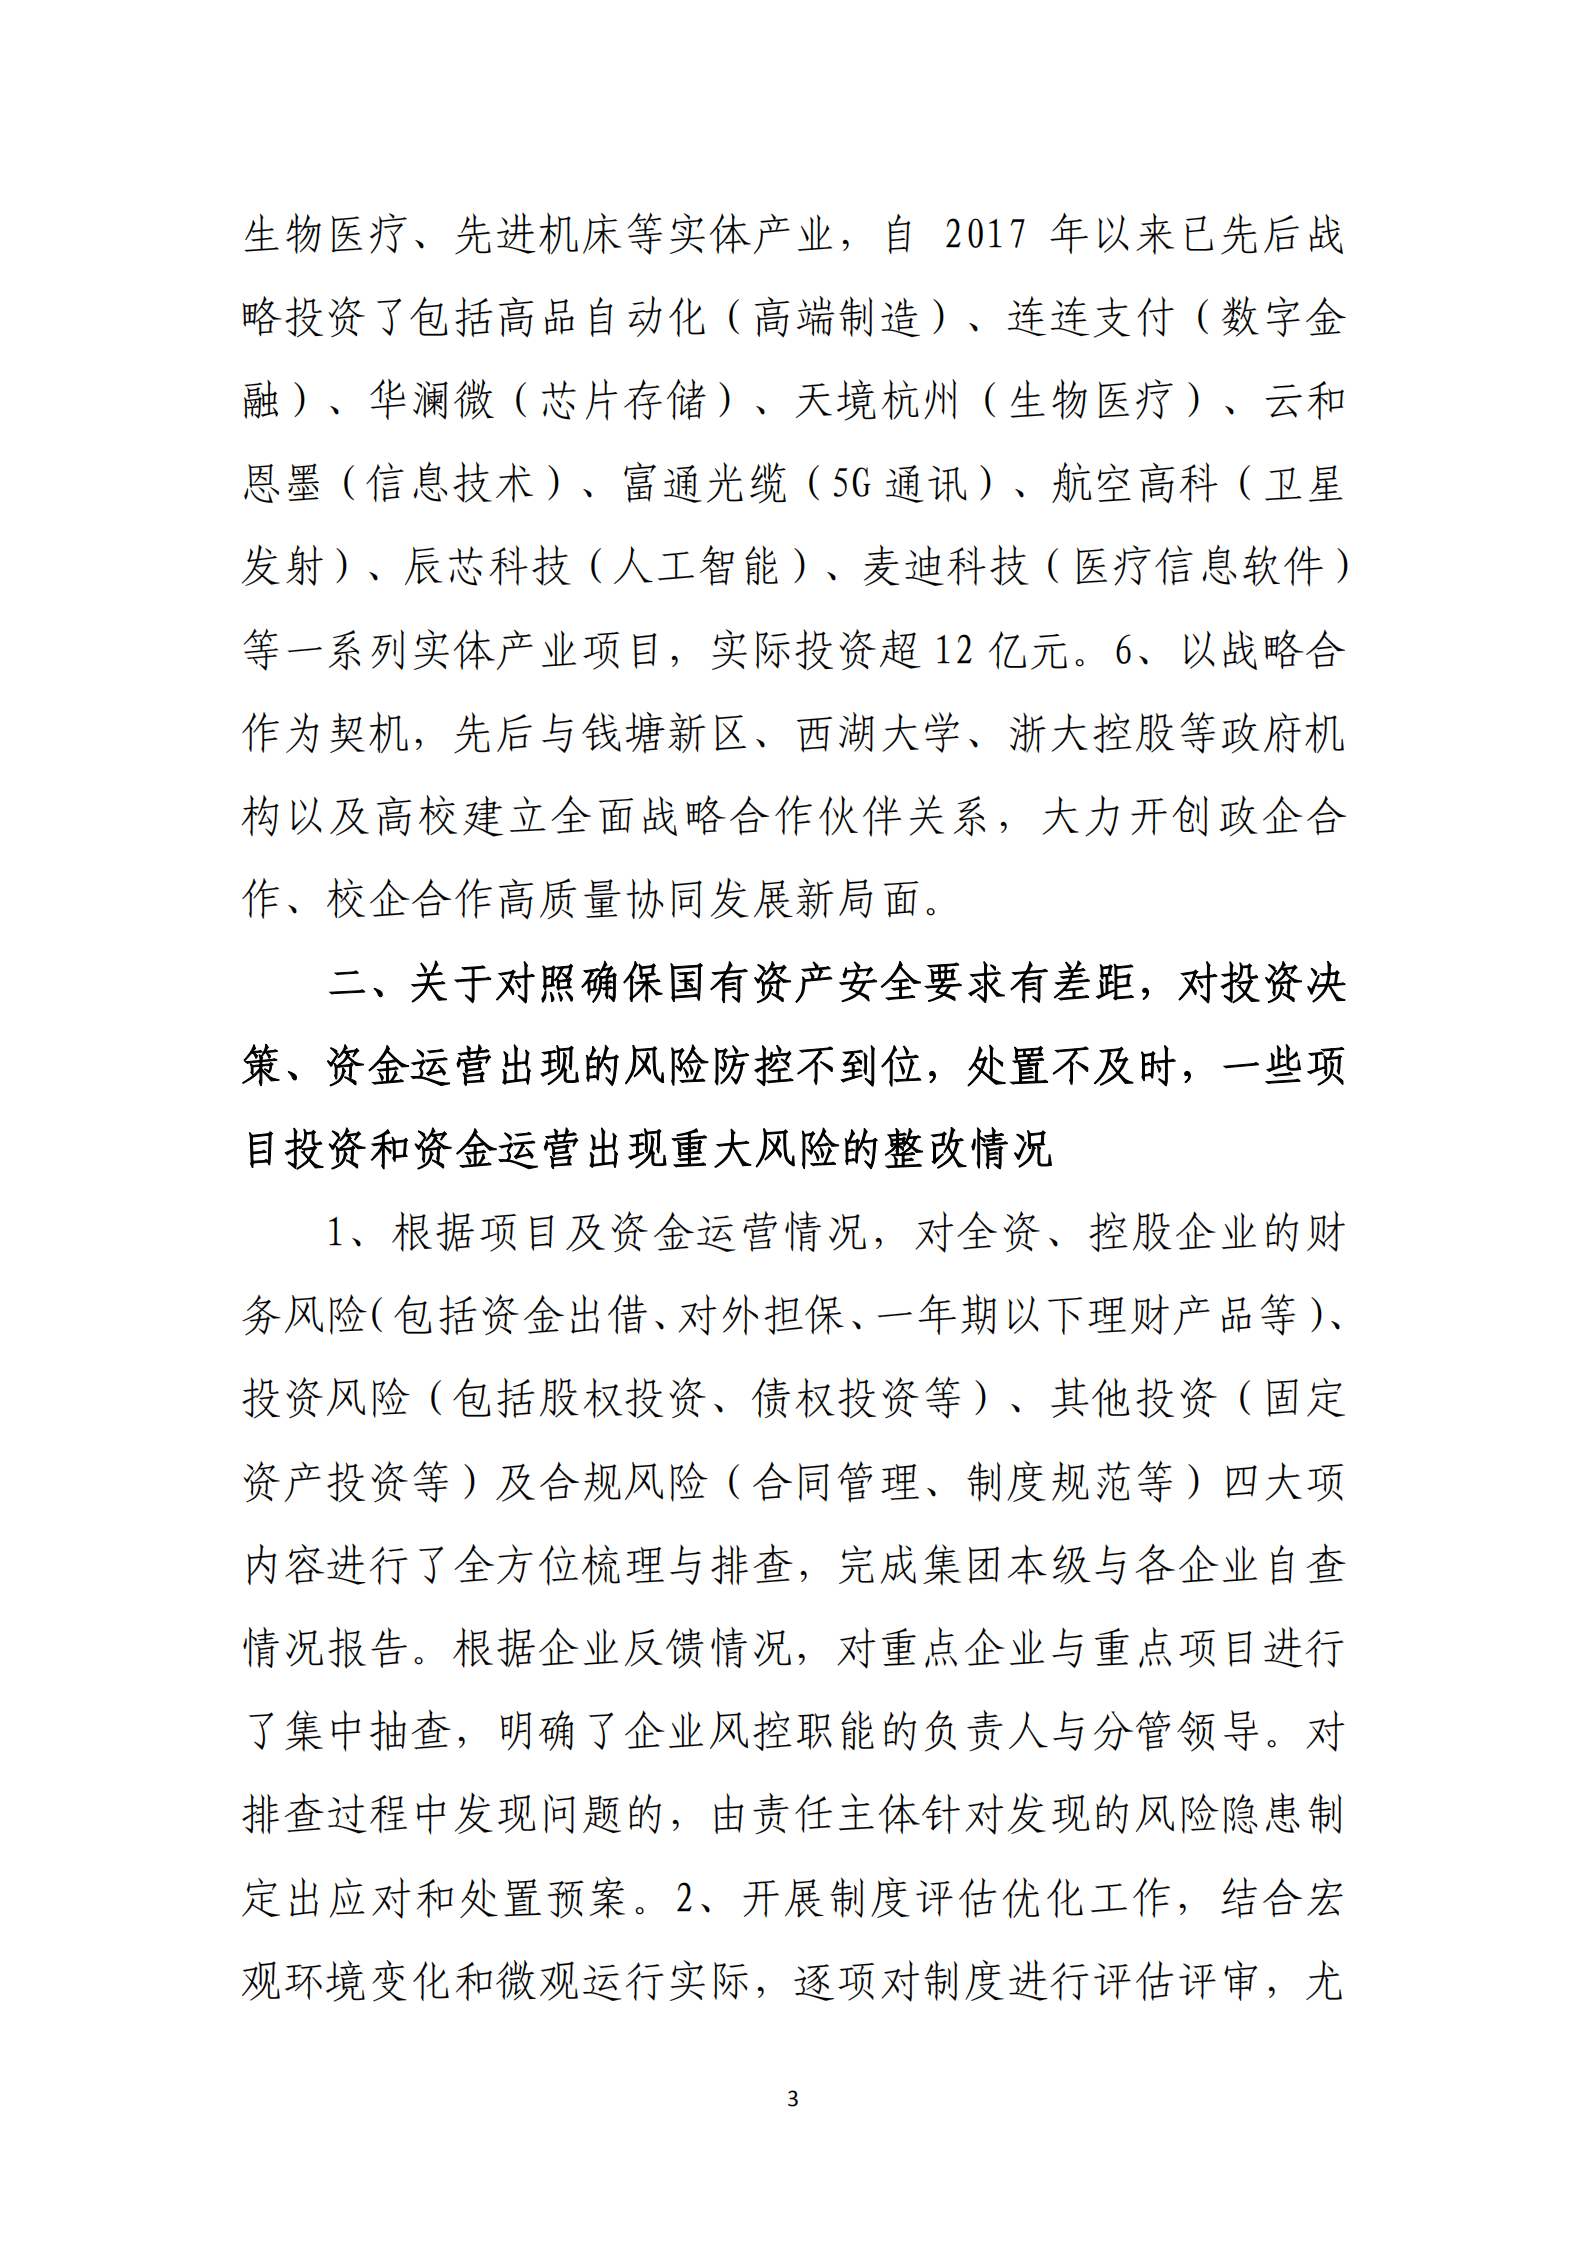 杭实集团党委关于巡察整改情况的通报_02.png